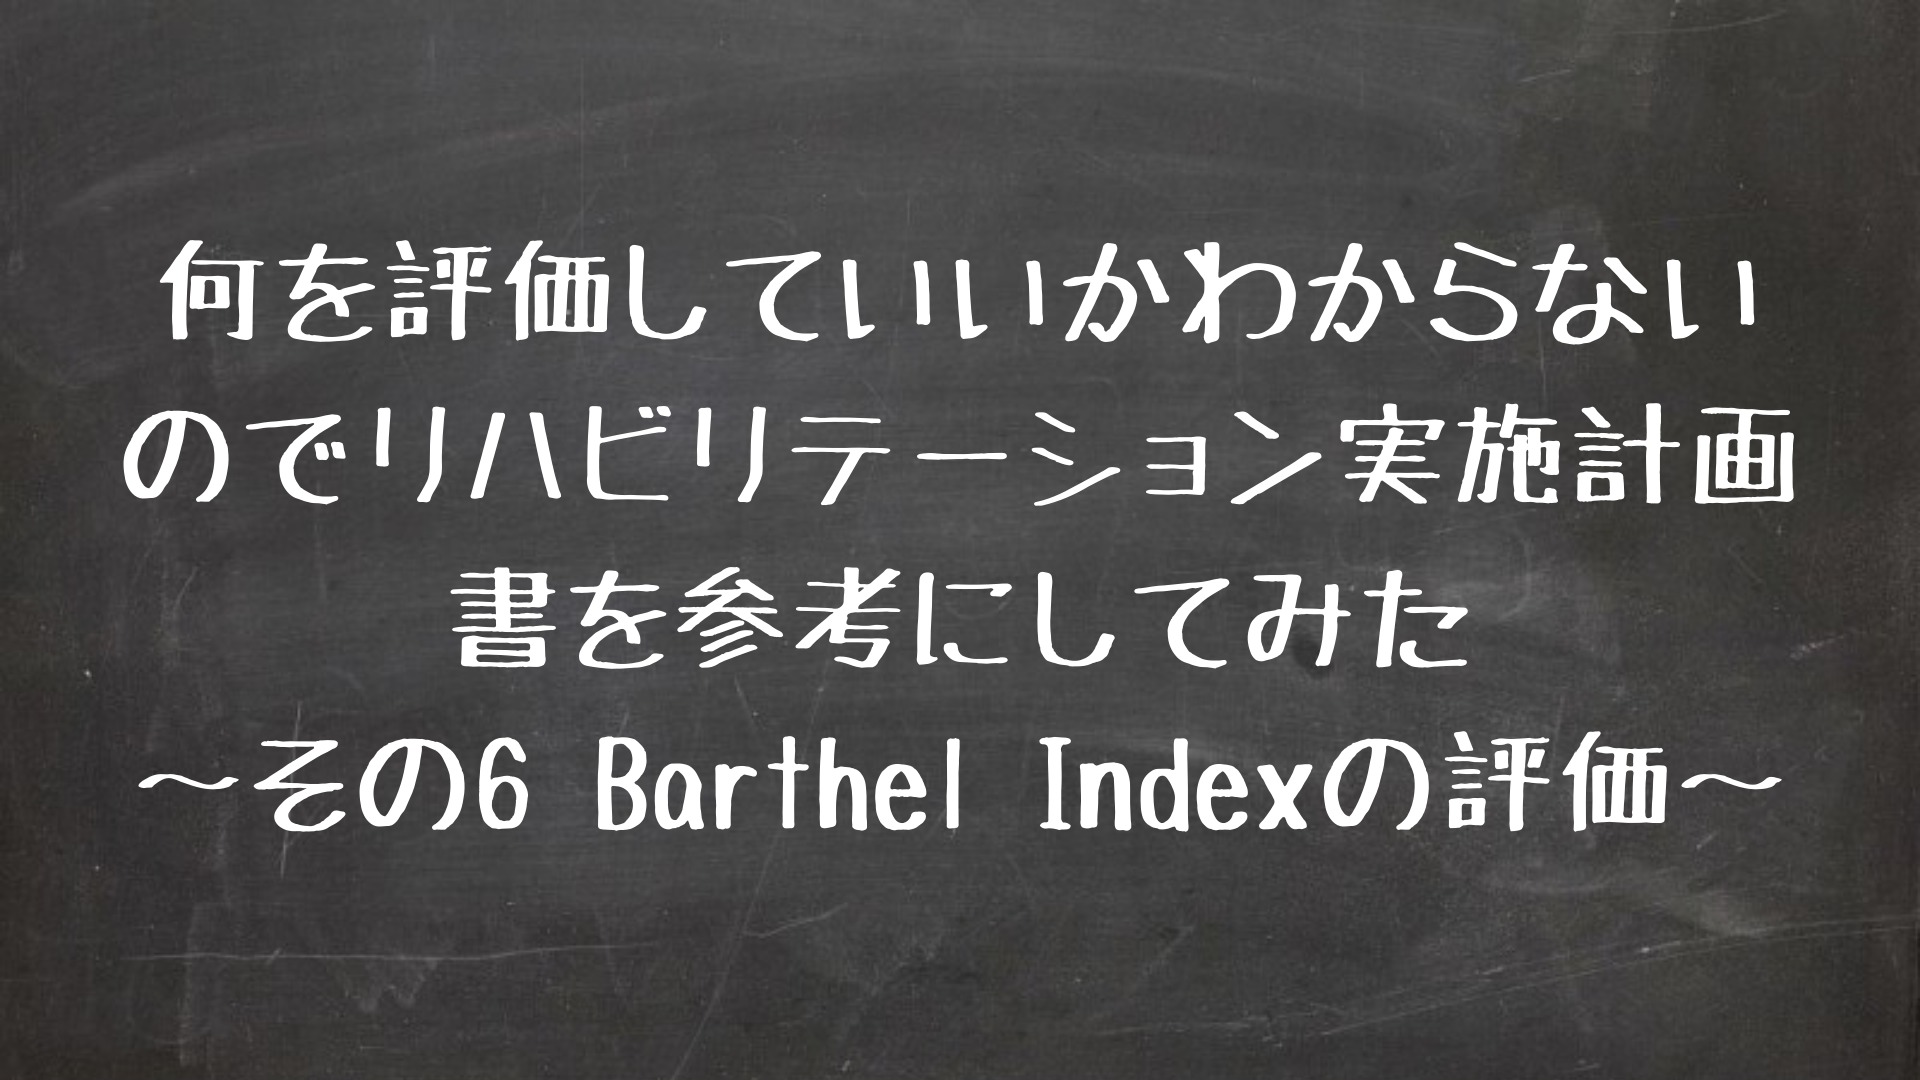 何を評価していいかわからないのでリハビリテーション実施計画書を参考にしてみた　〜その6 　 Barthel Indexについて〜